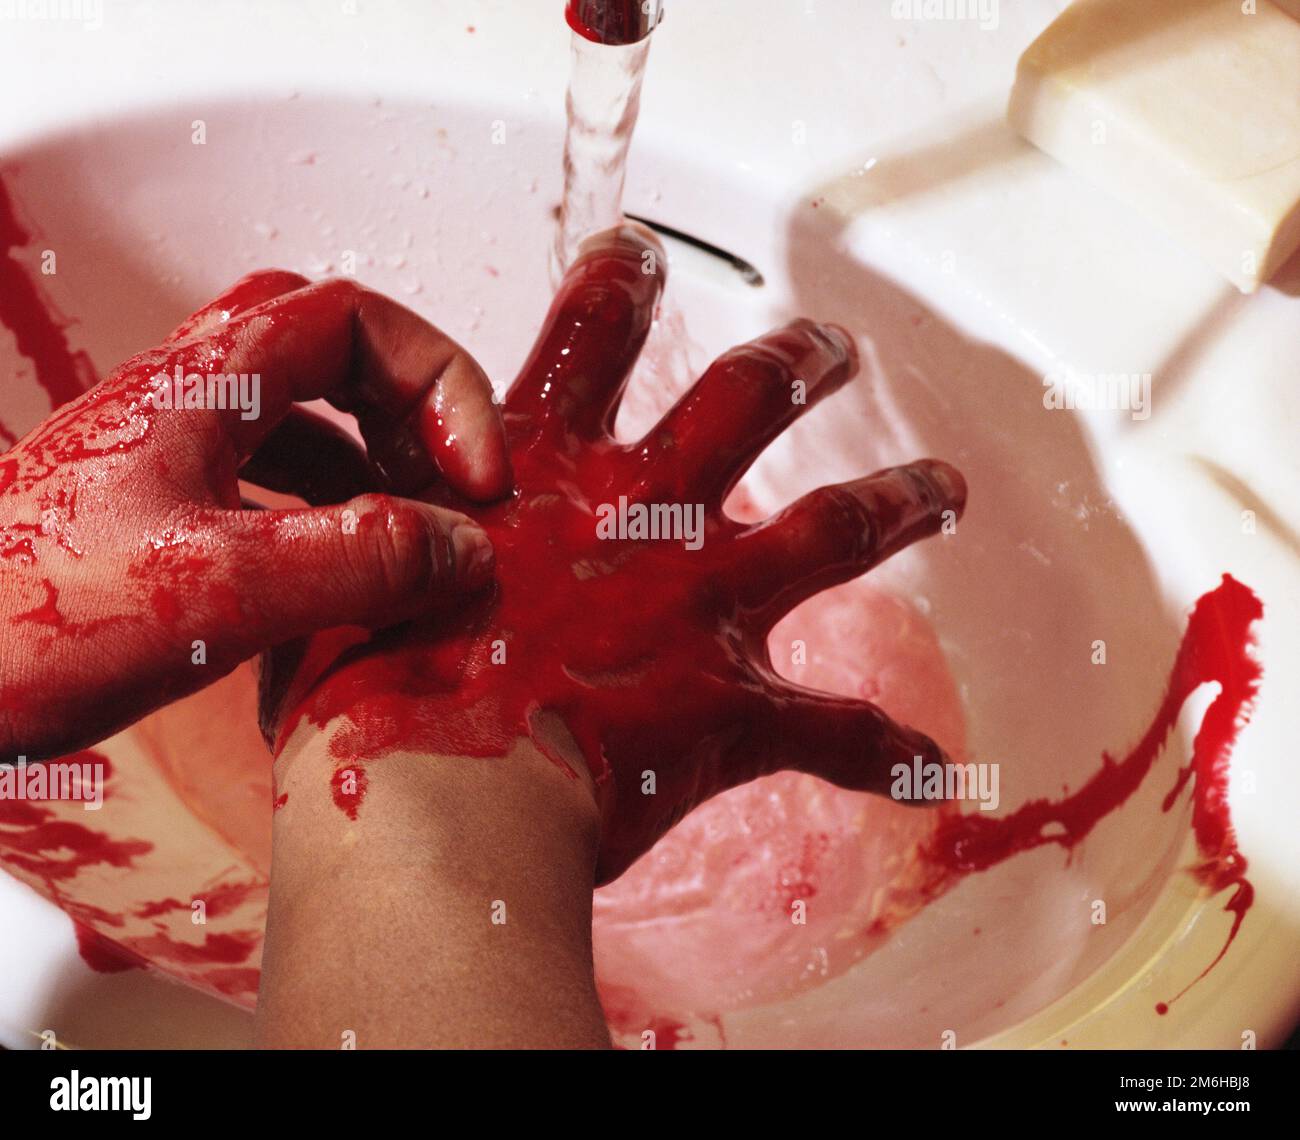 Un hombre lavando la sangre de sus manos con agua en un lavabo. Captura de imagen 2000. Fecha exacta desconocida. Foto de stock